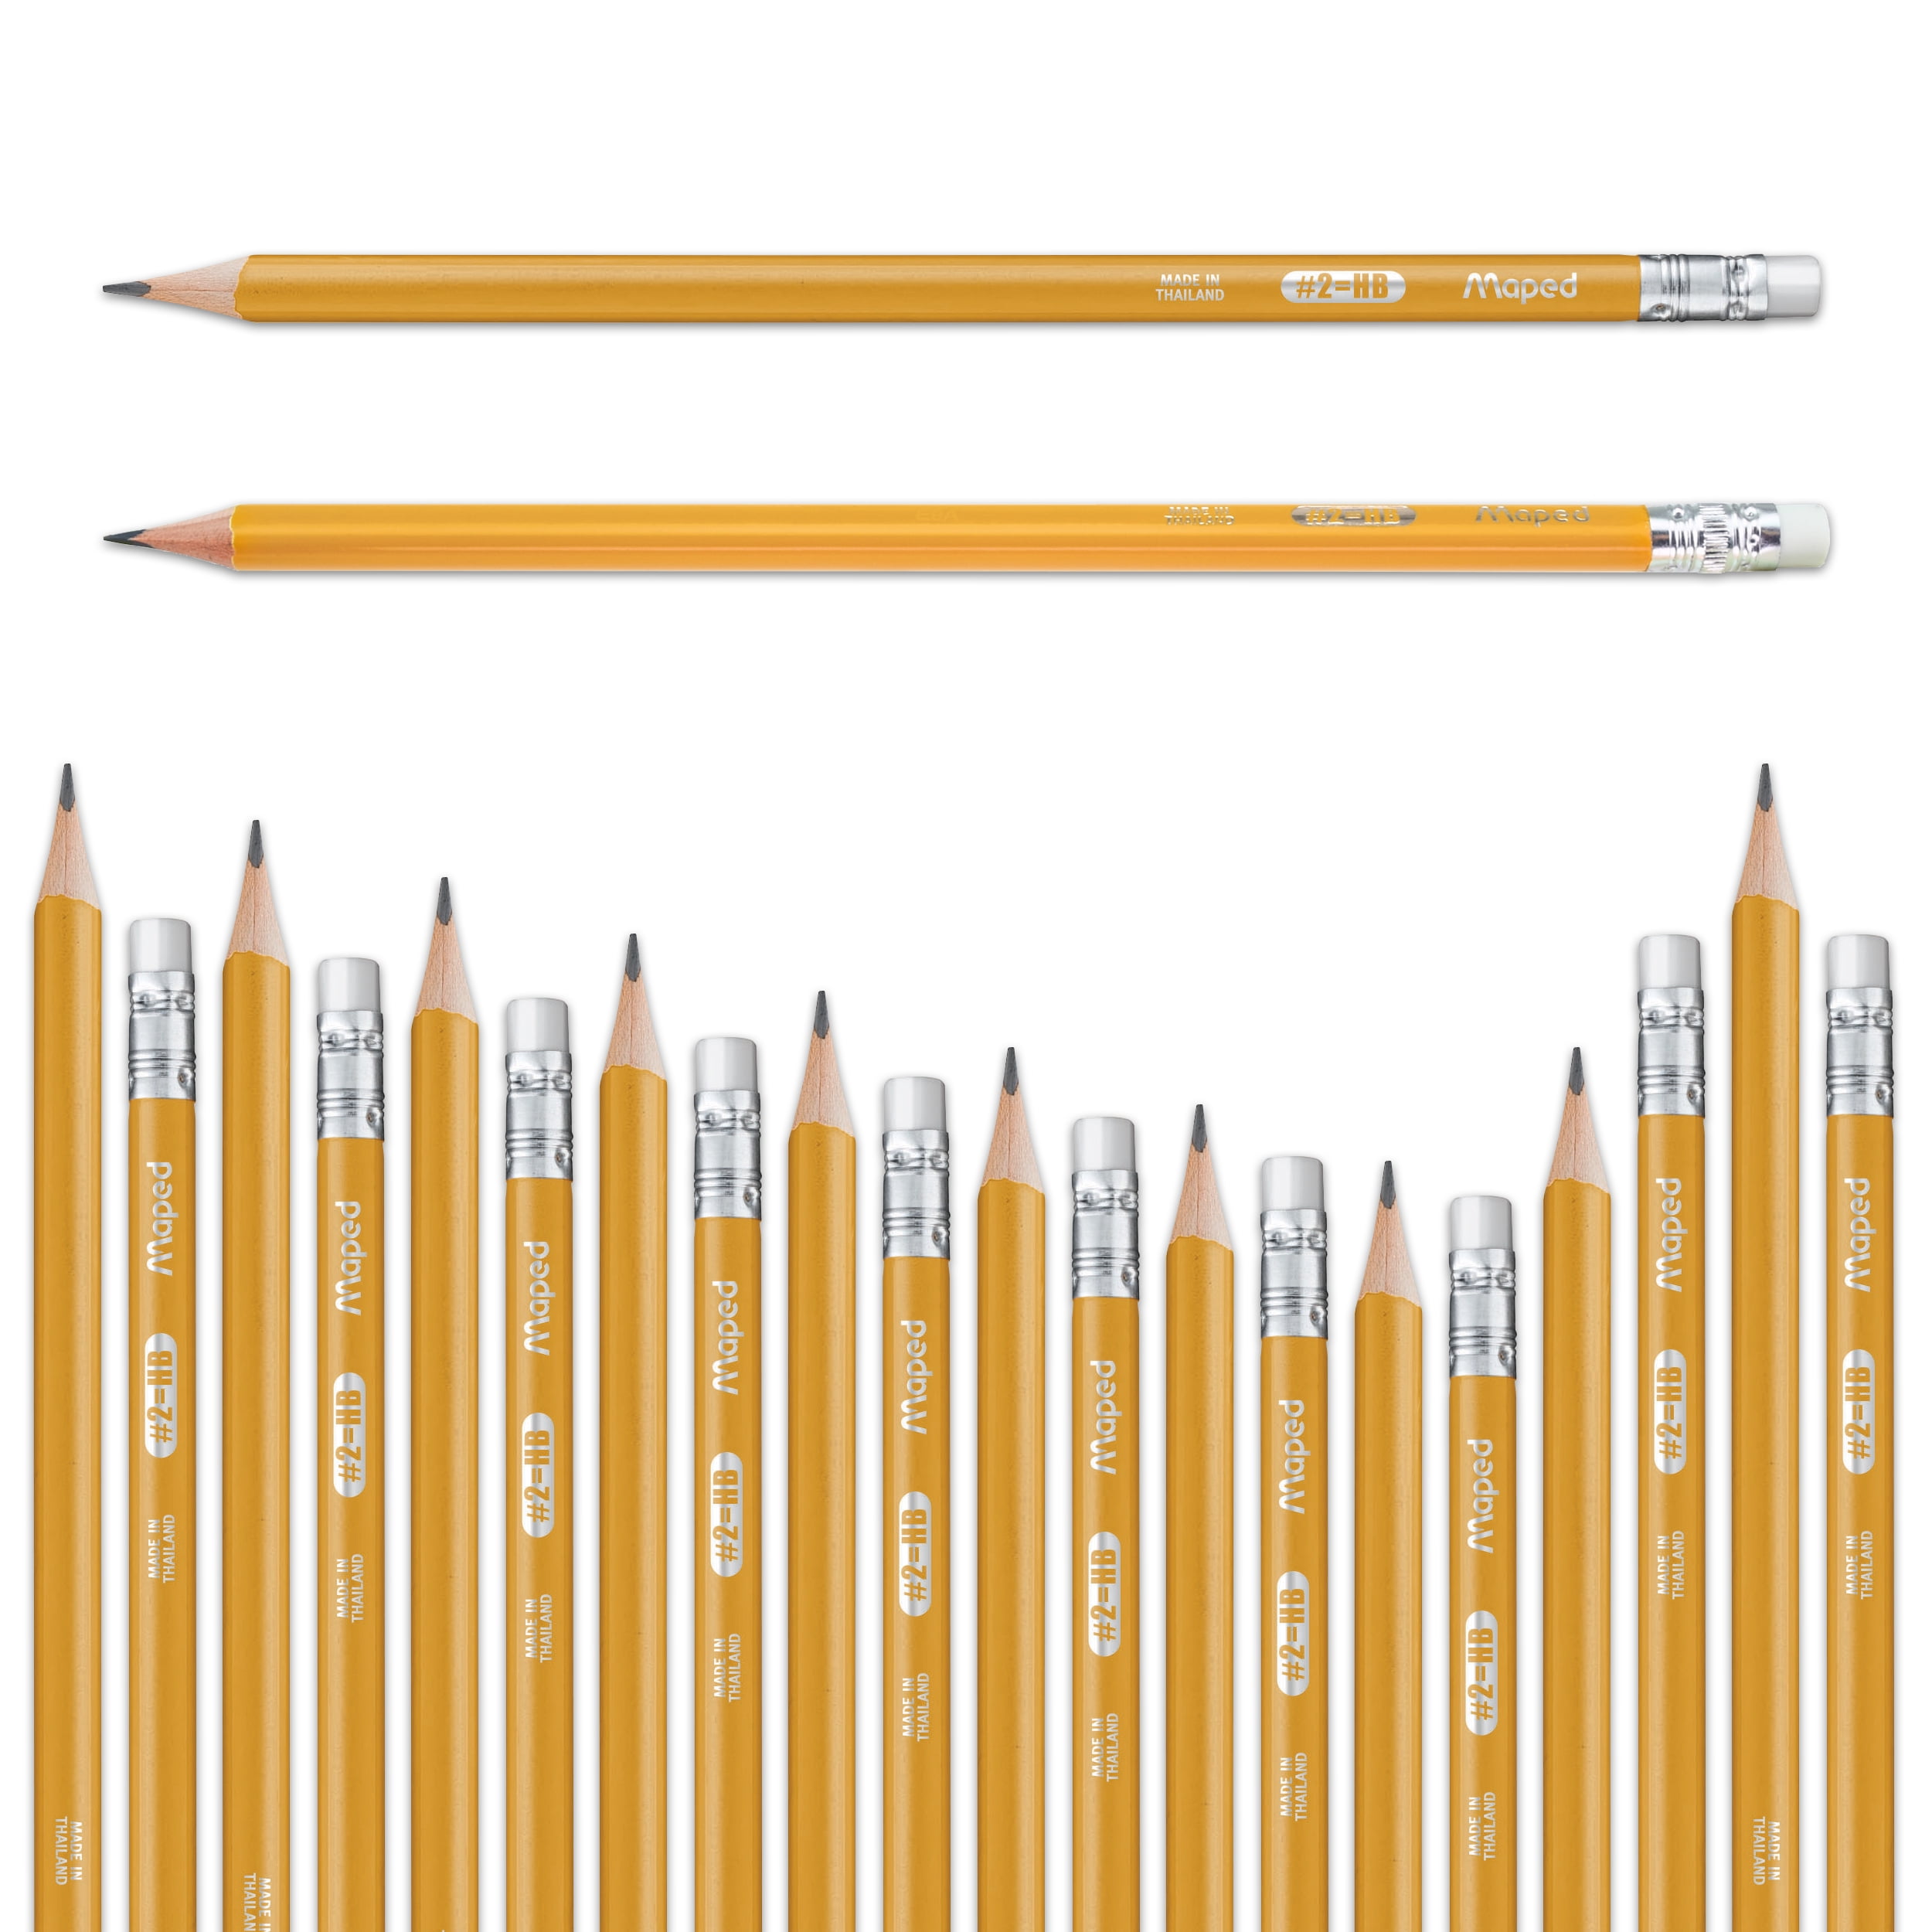 Derwent Graphic Graphite Pencils Set Of 24 - Office Depot